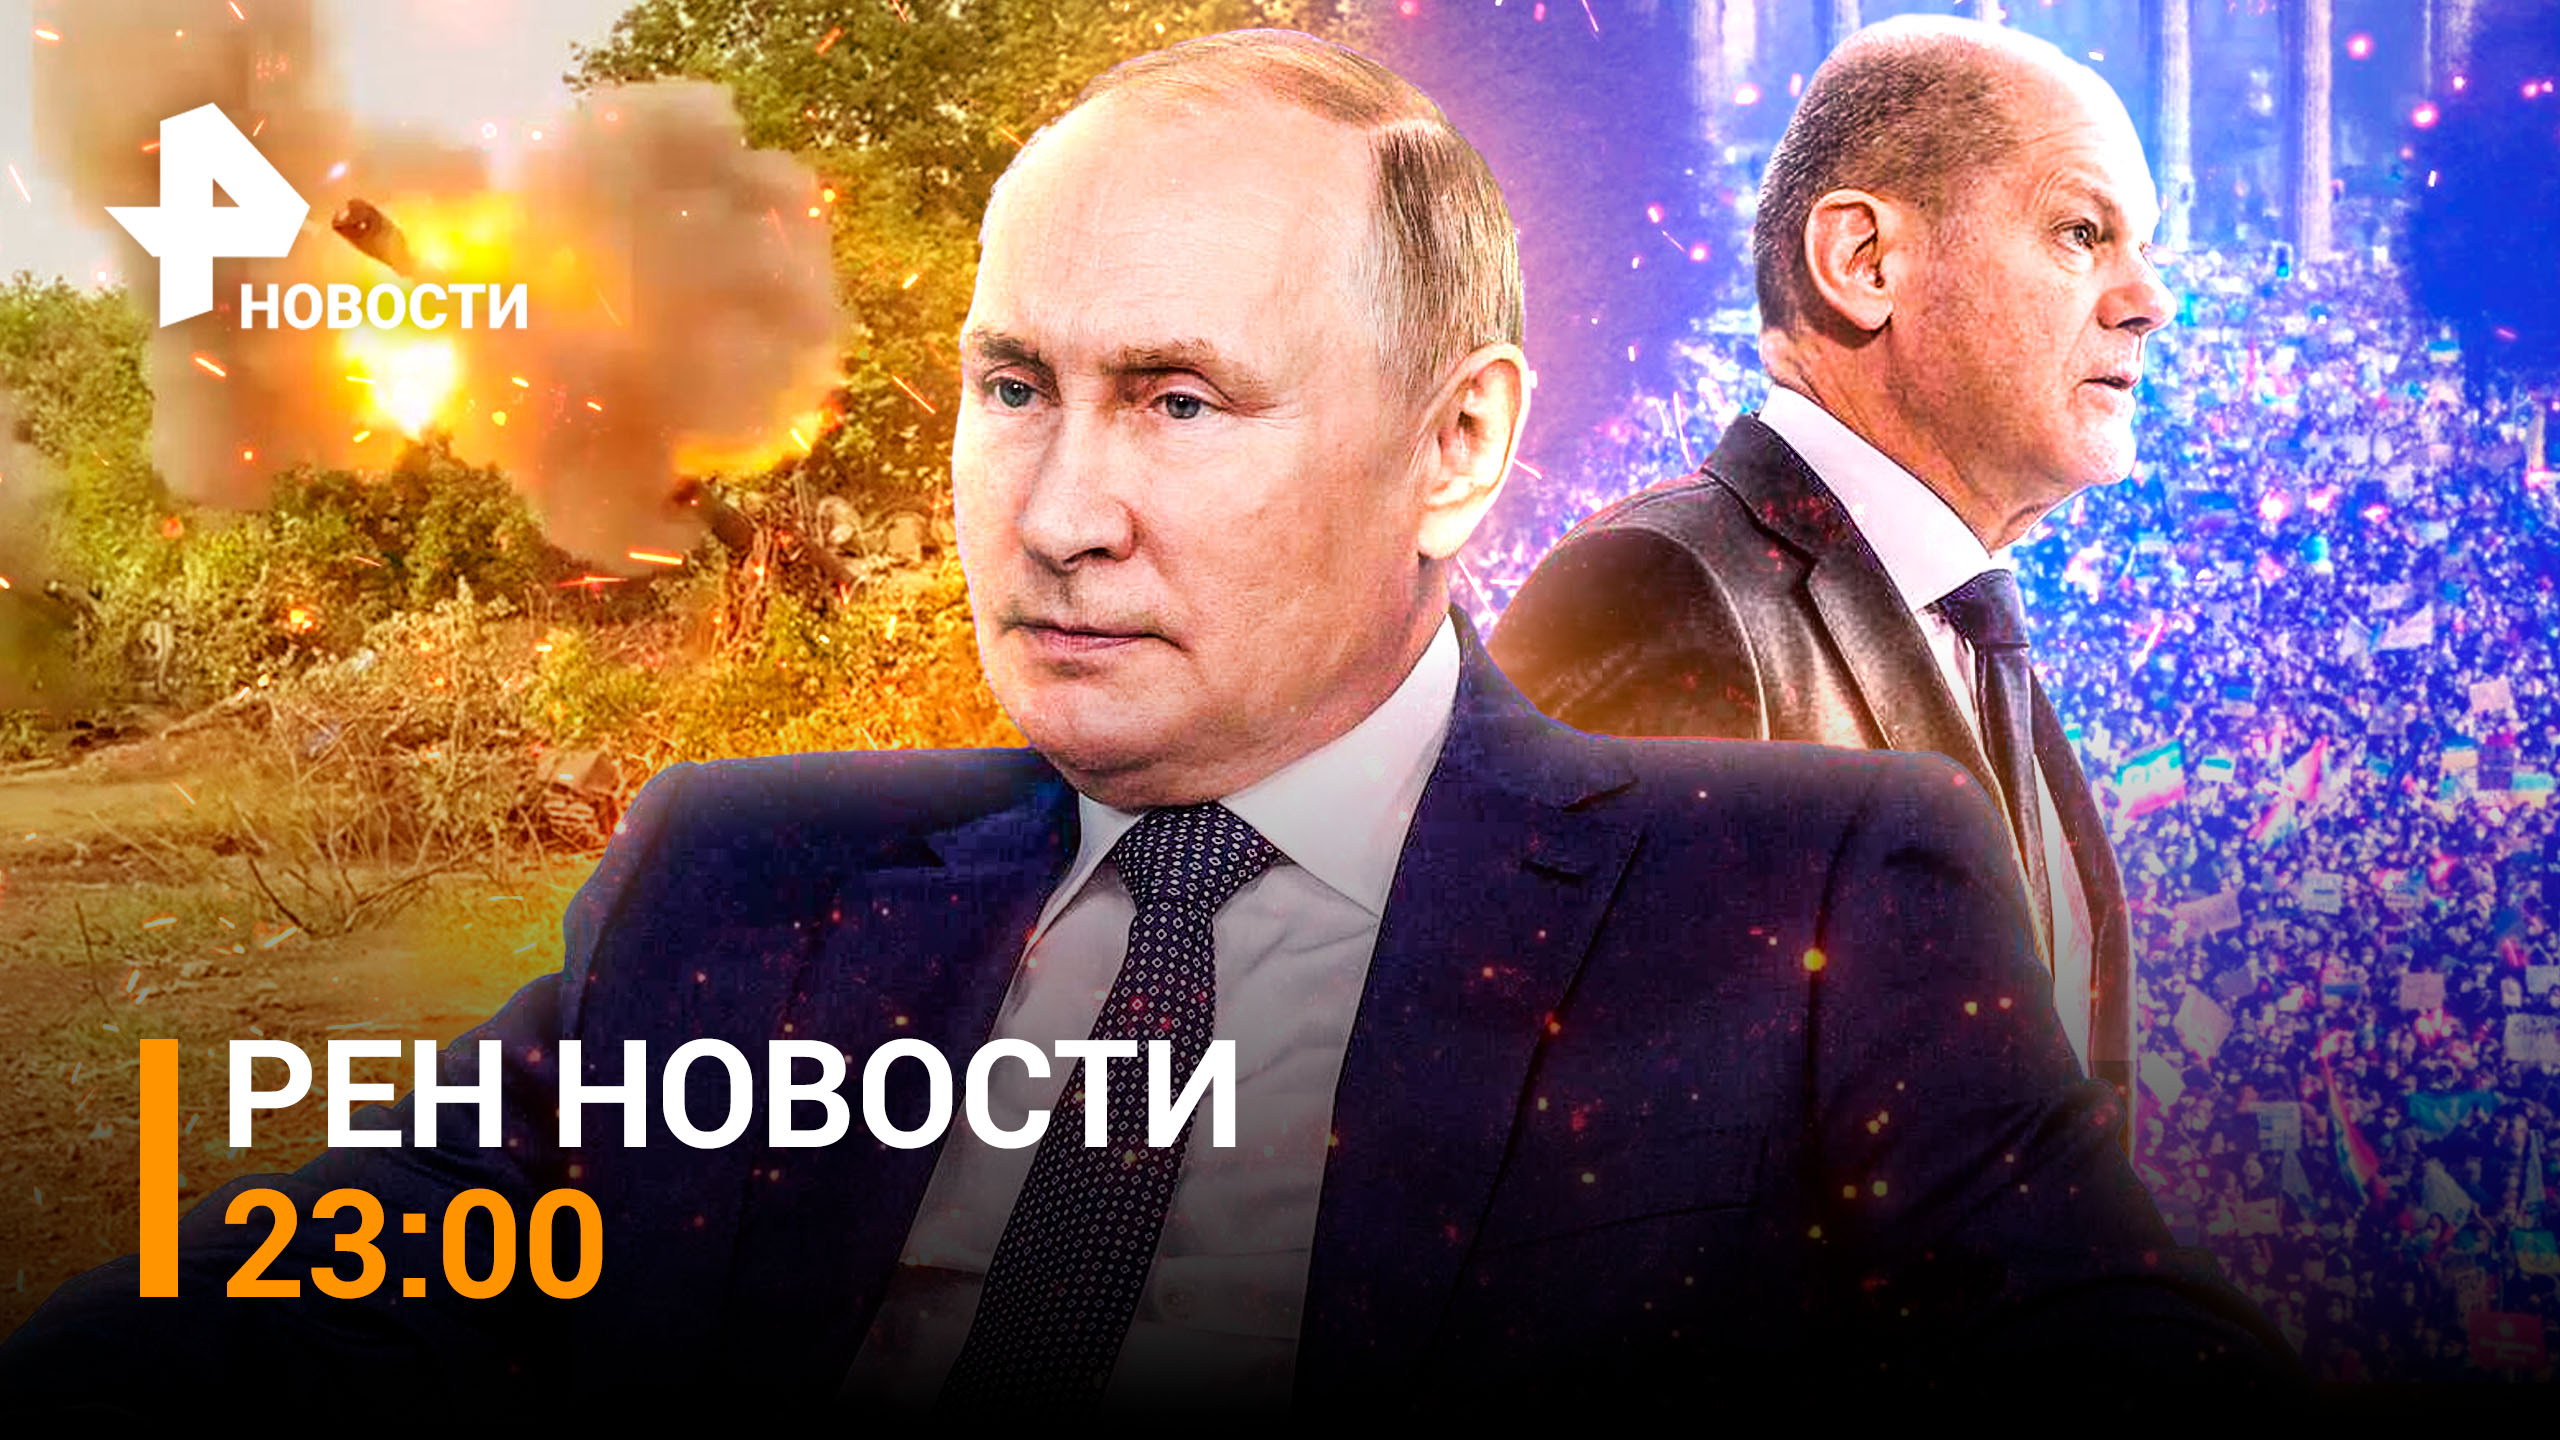 Путин и Шольц: первый разговор за несколько месяцев, ВС РФ отбивают штурм Лимана / РЕН Новости 23:00